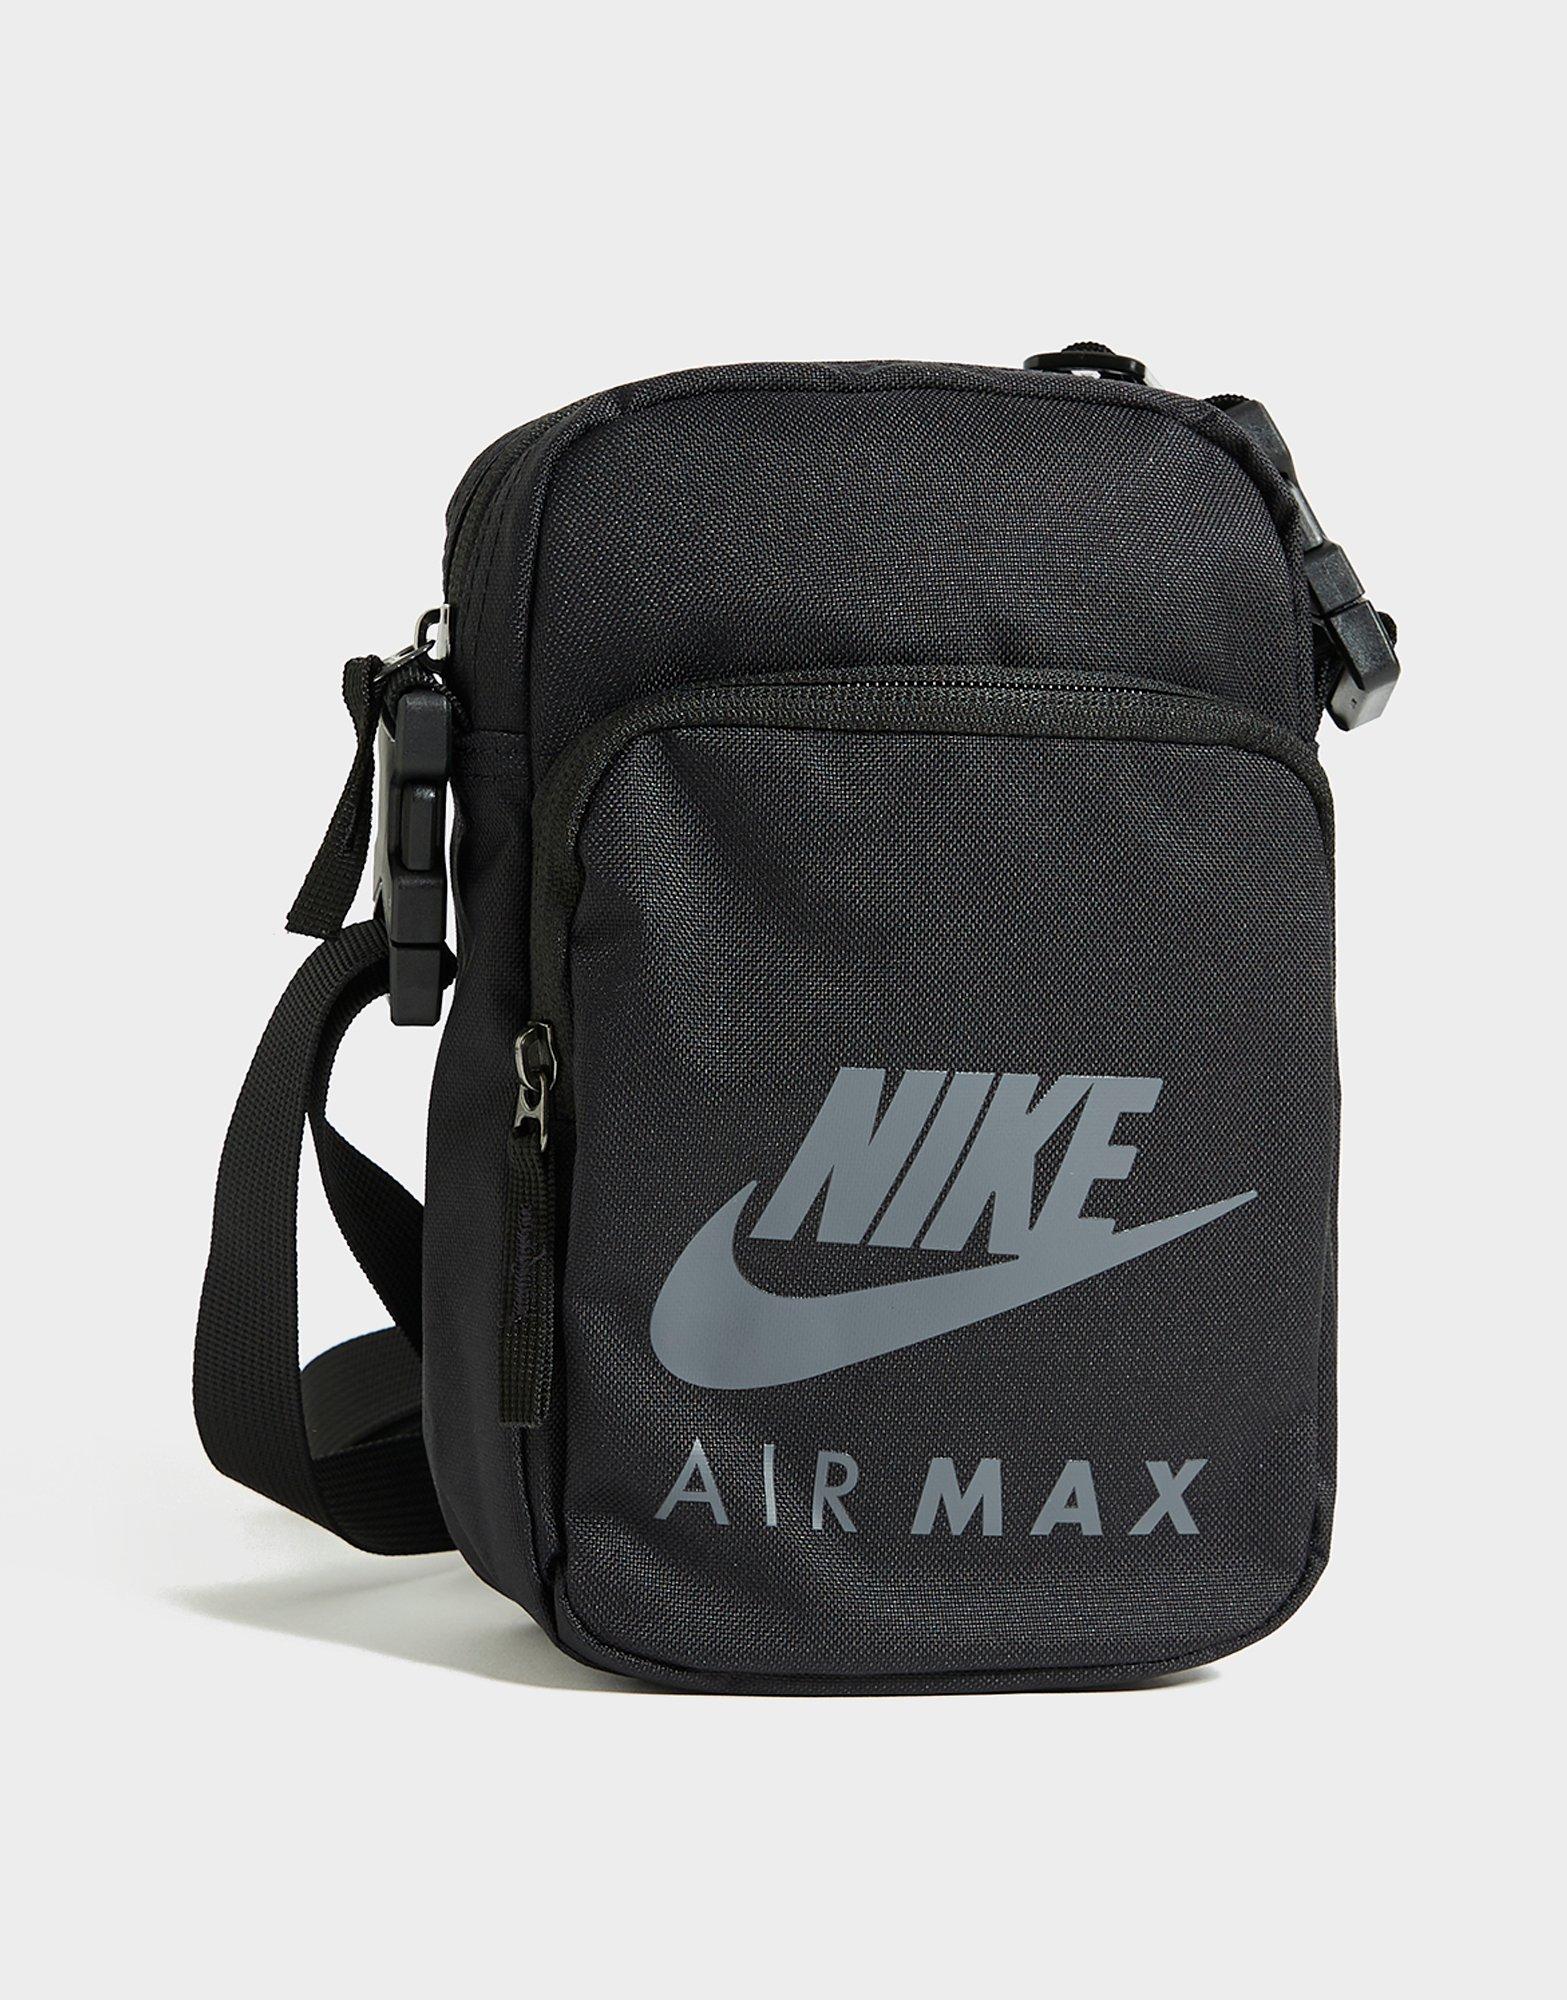 nike air max bag black